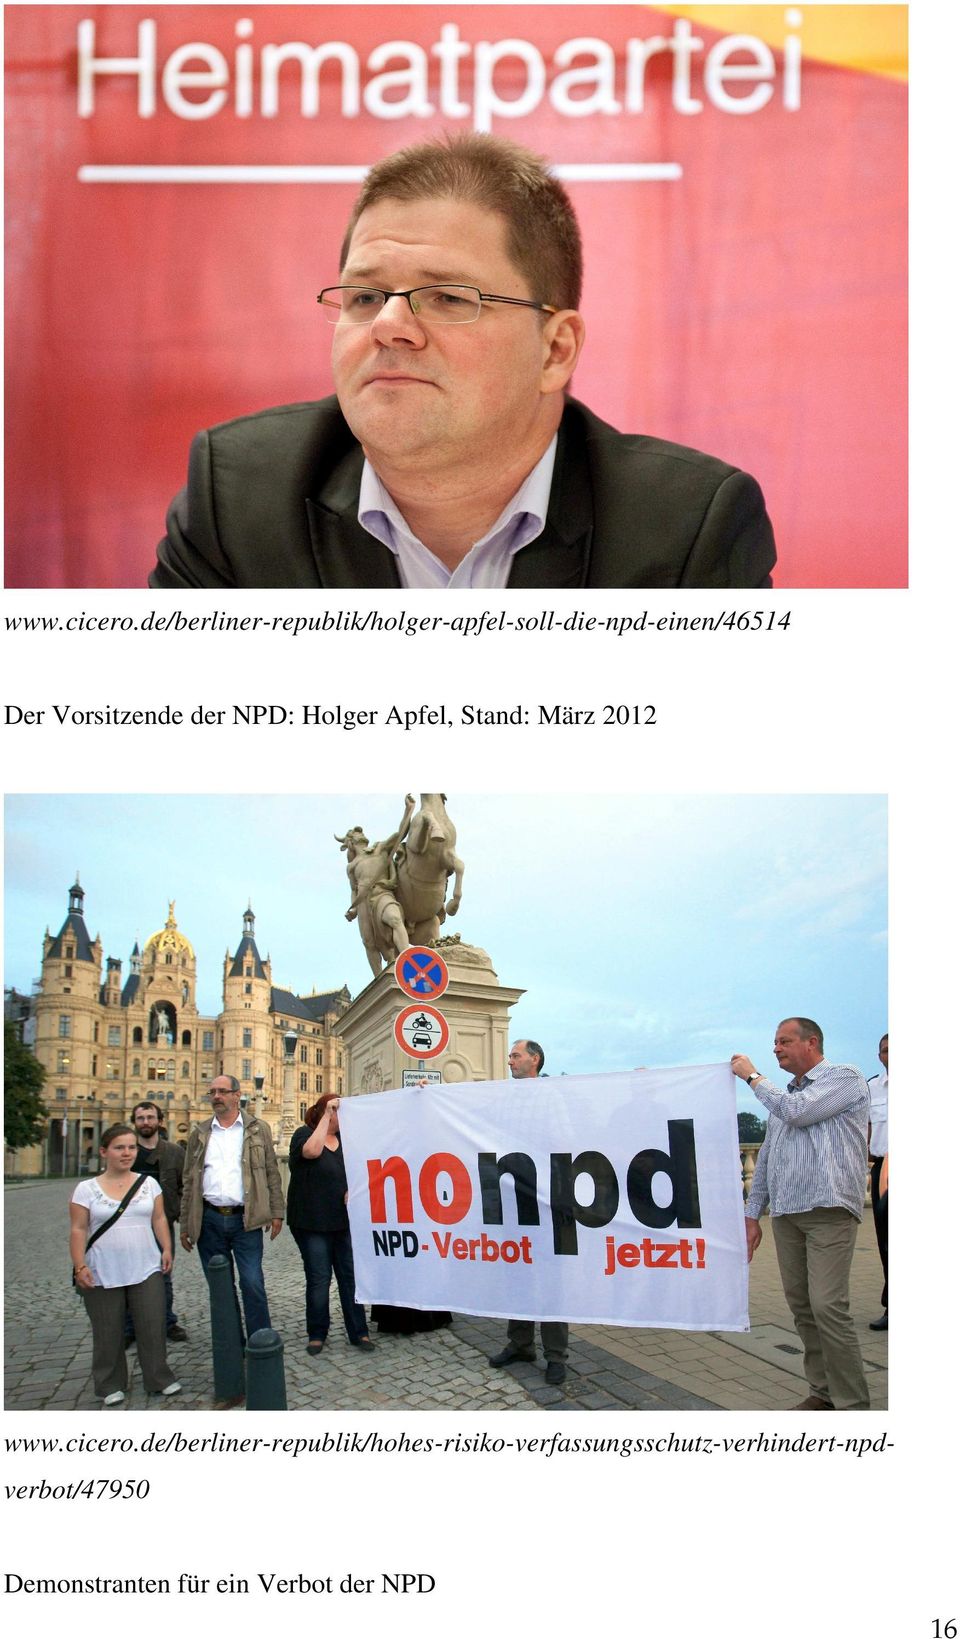 Vorsitzende der NPD: Holger Apfel, Stand: März 2012